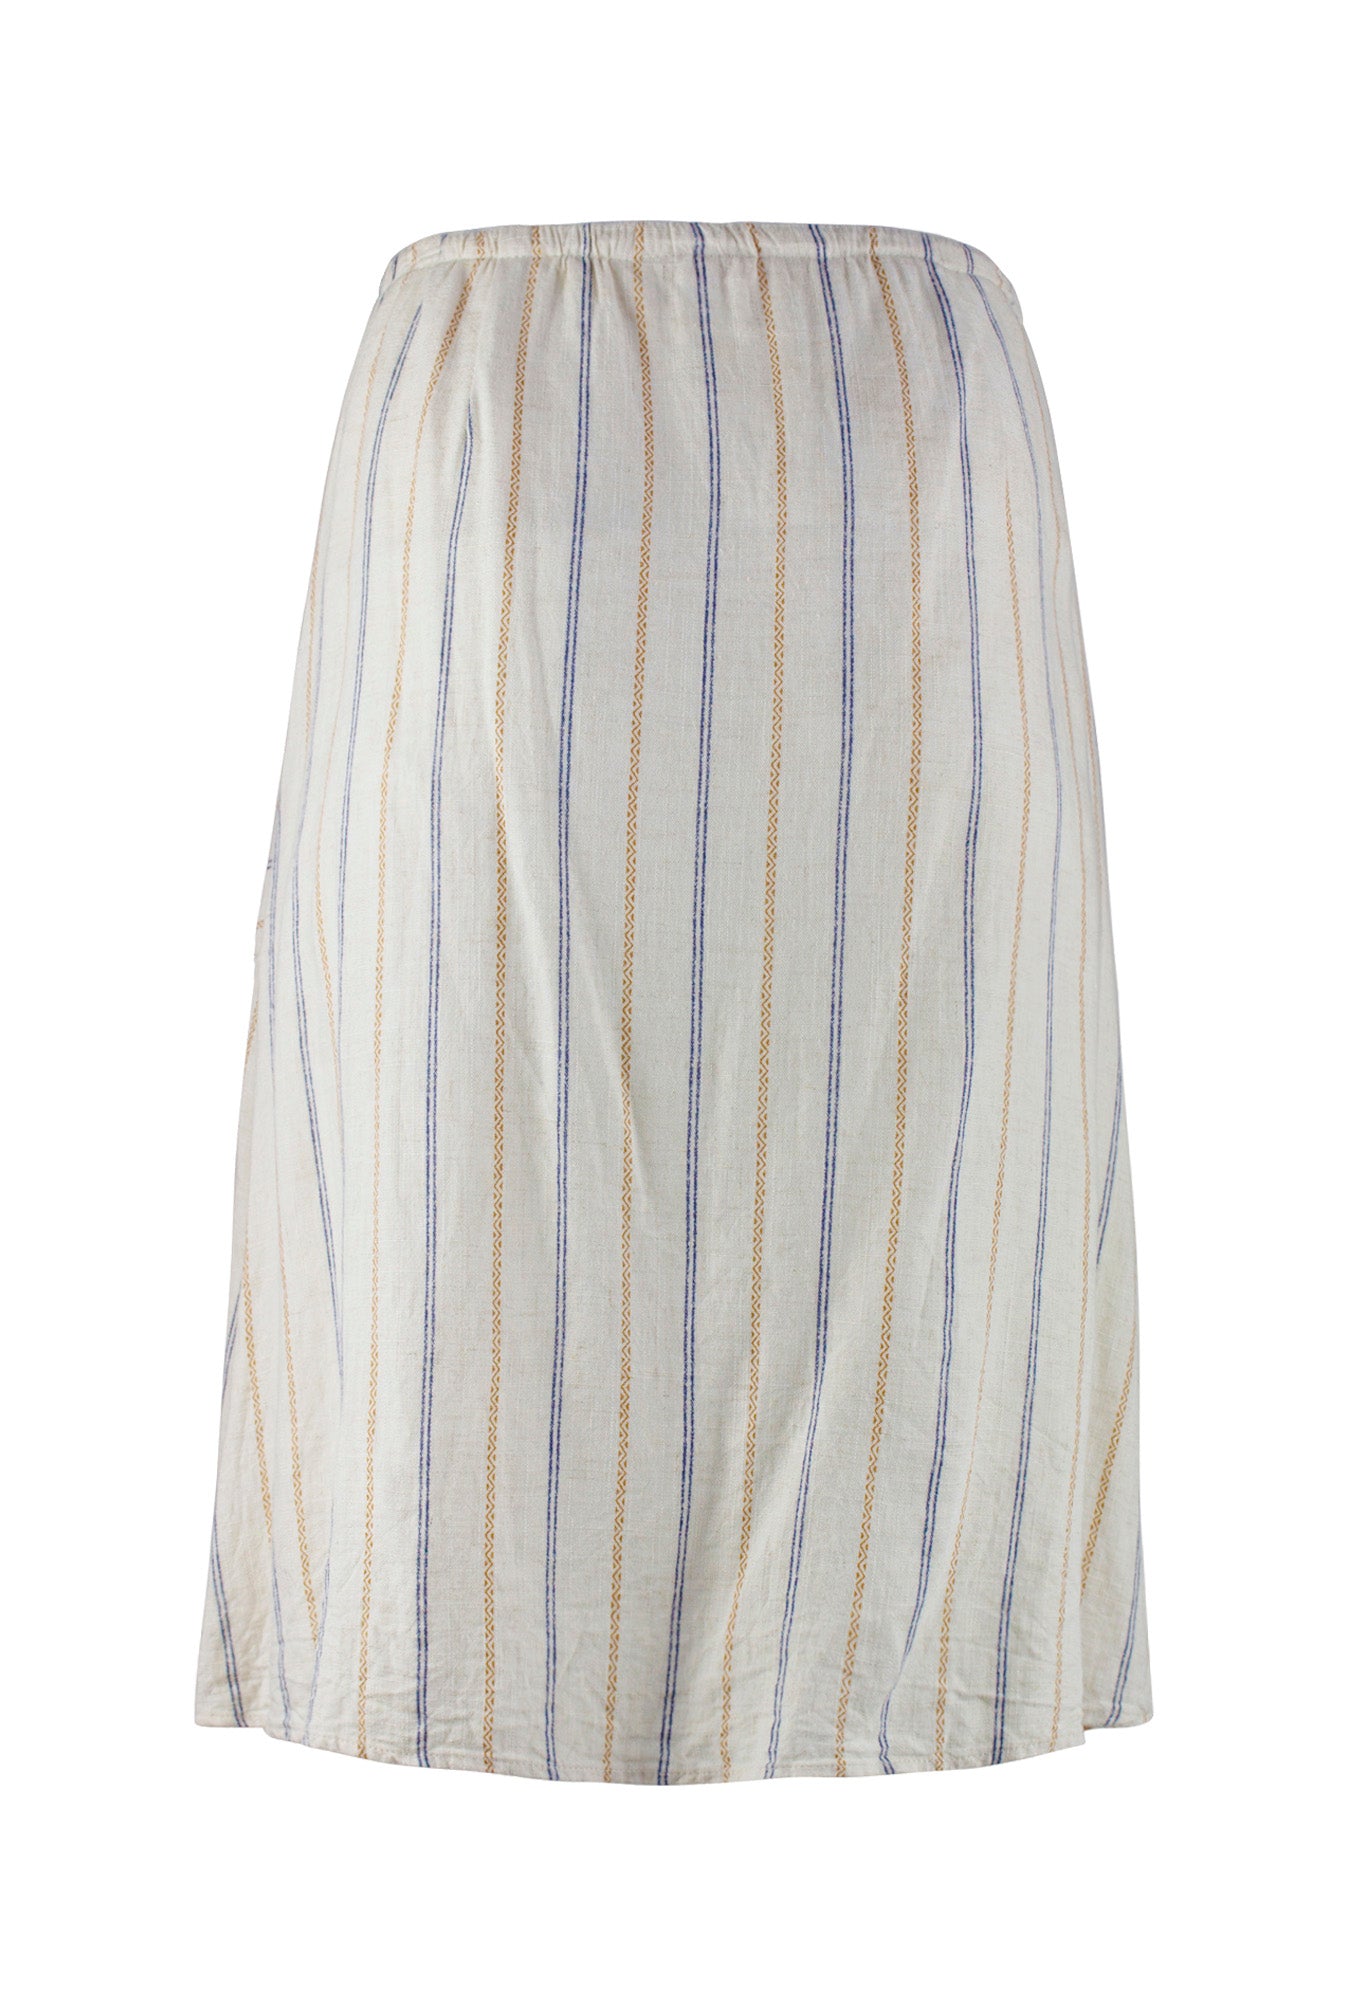 Pocket Striped Skirt